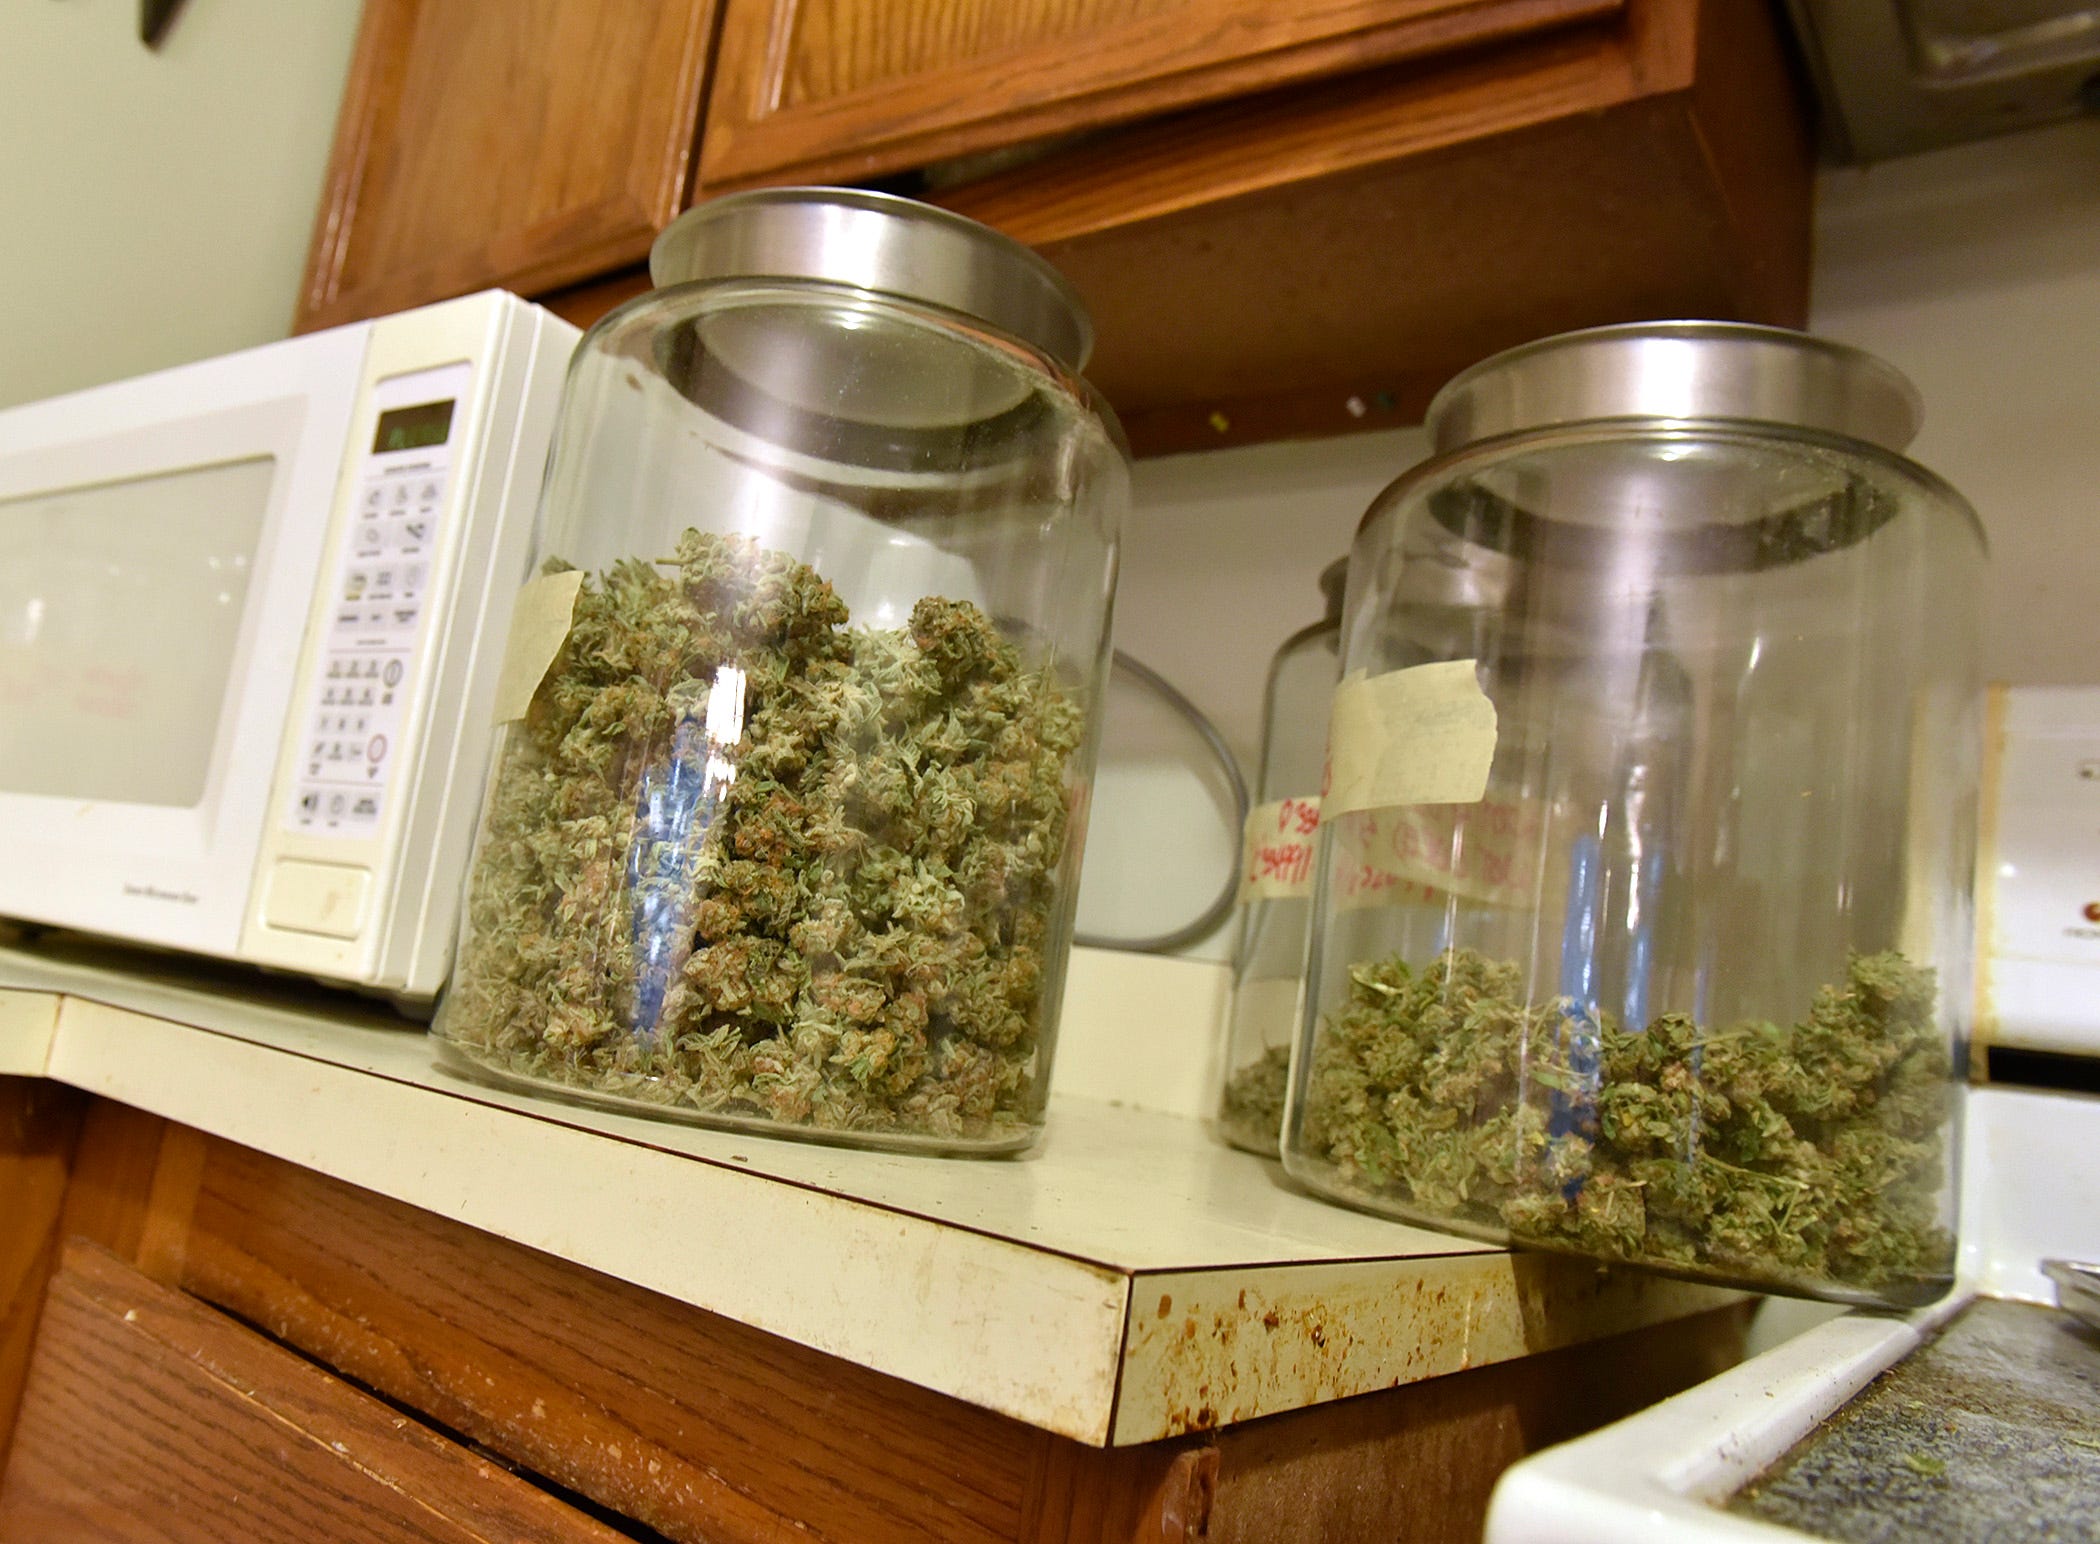 Livonia latest community to ban marijuana facilities